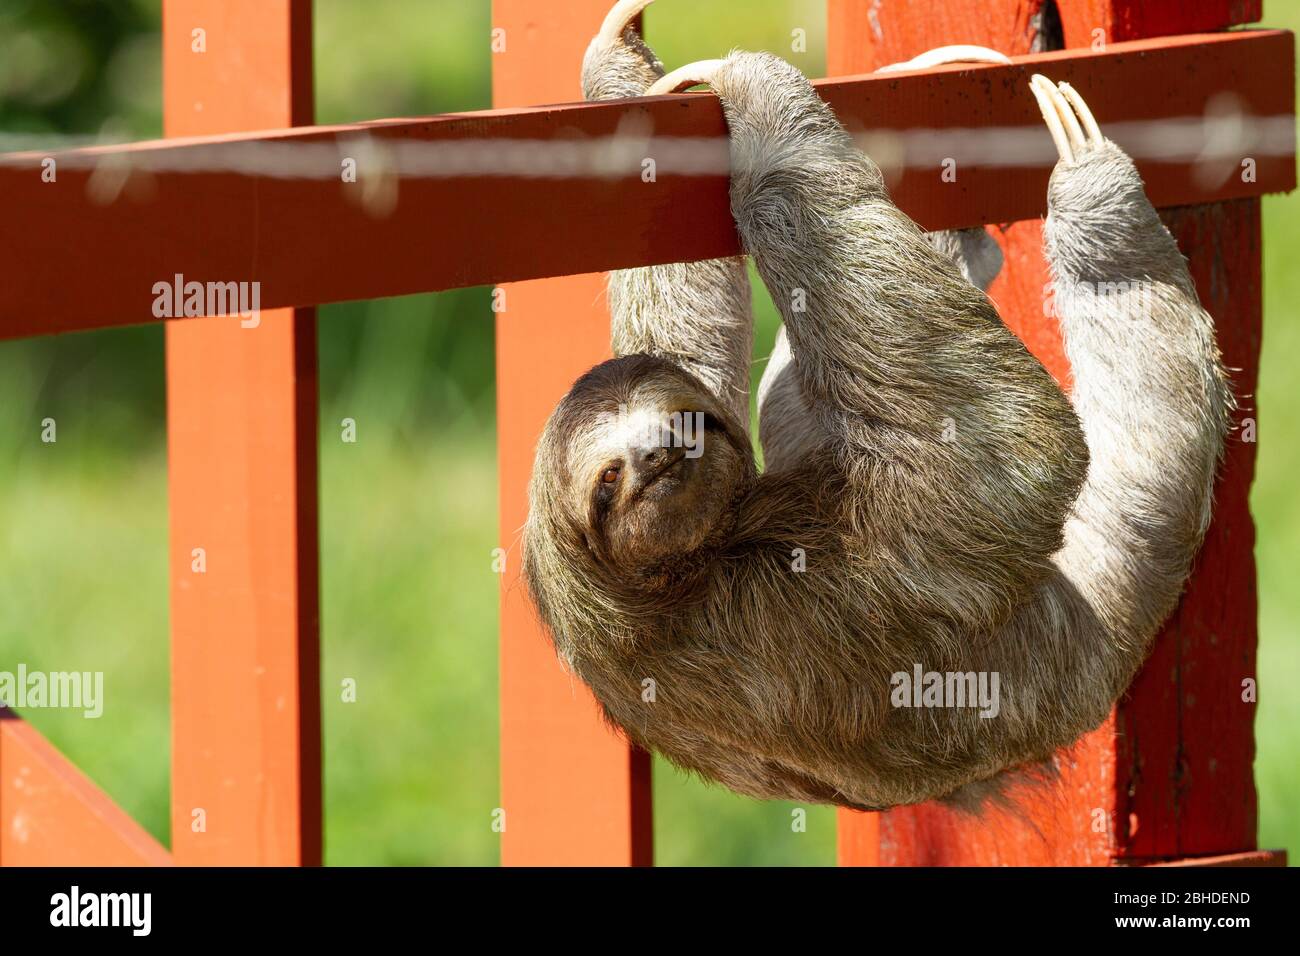 Sloth a tre punte (bradypus infuscatus) che sale lungo una recinzione per passare da un albero all'altro Foto Stock